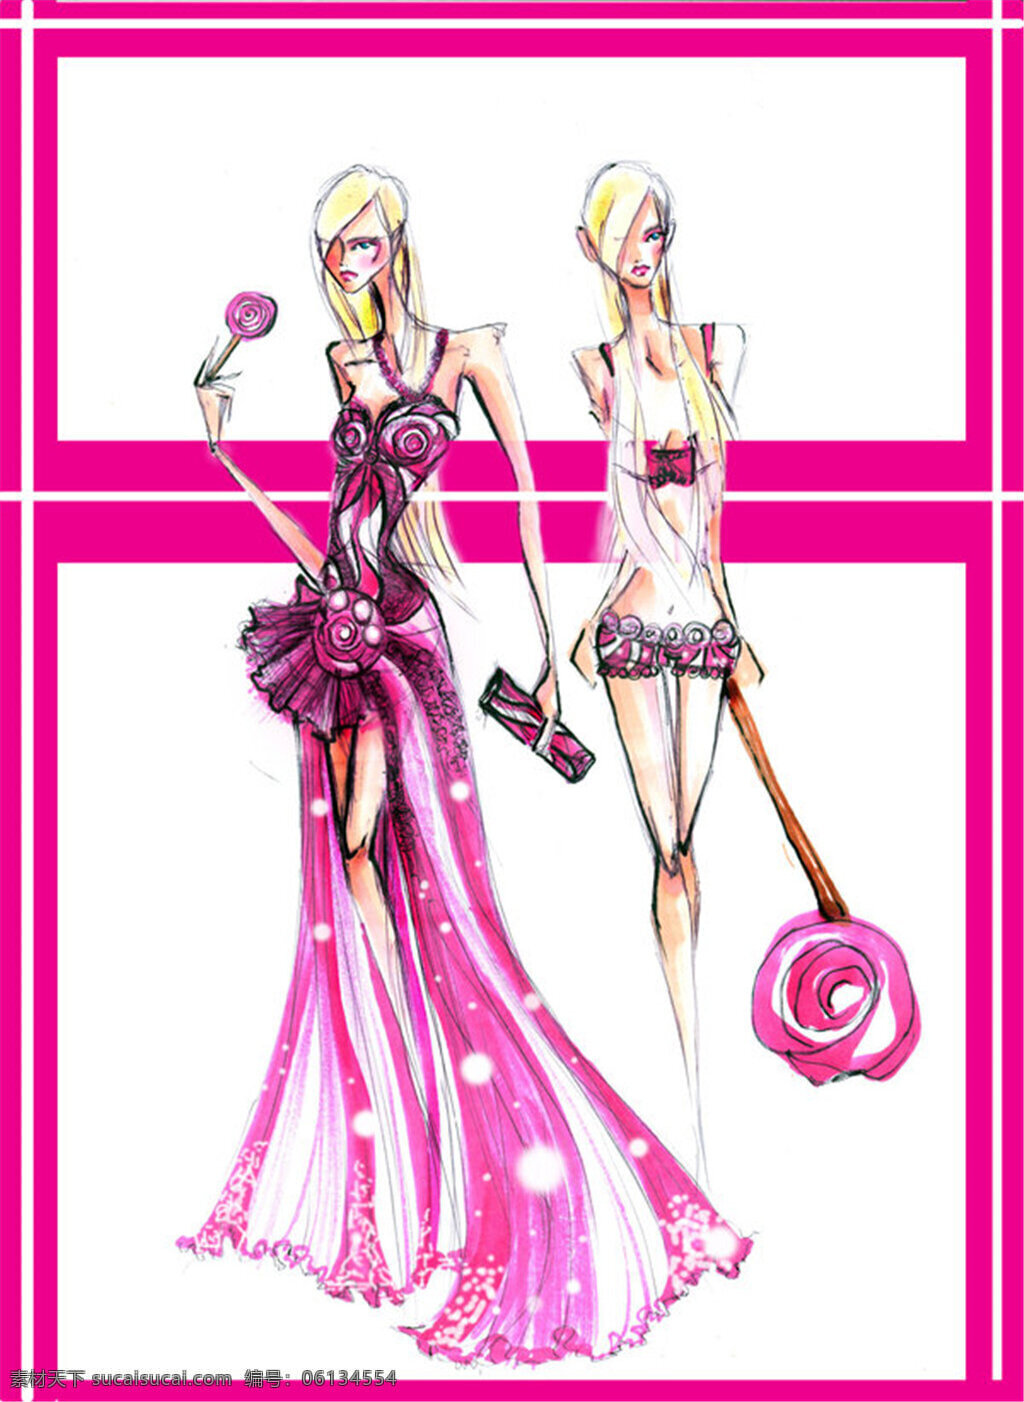 紫色 长裙 婚纱 设计图 服装设计 时尚女装 职业女装 职业装 女装设计 效果图 短裙 衬衫 服装 服装效果图 连衣裙